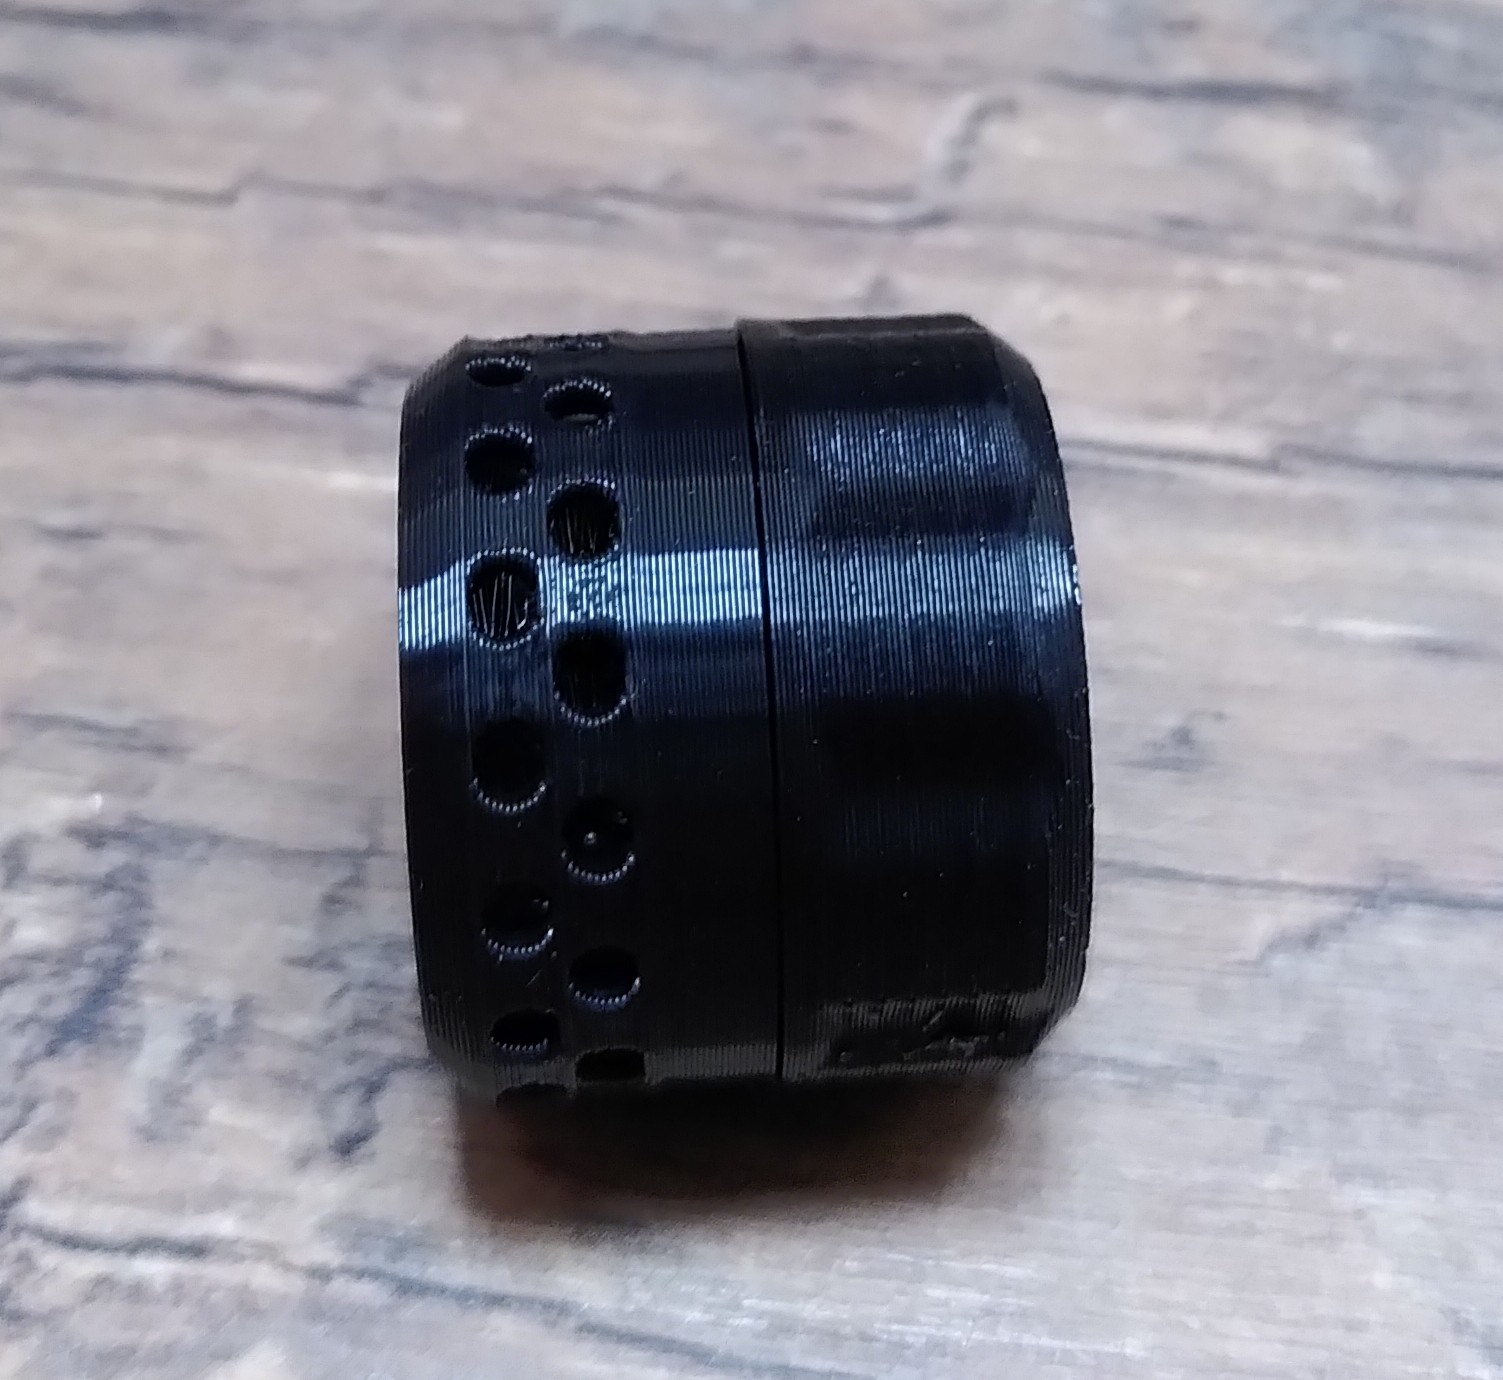 ein kleiner schwarzer, runder behälter für Silica - 3D gedruckt